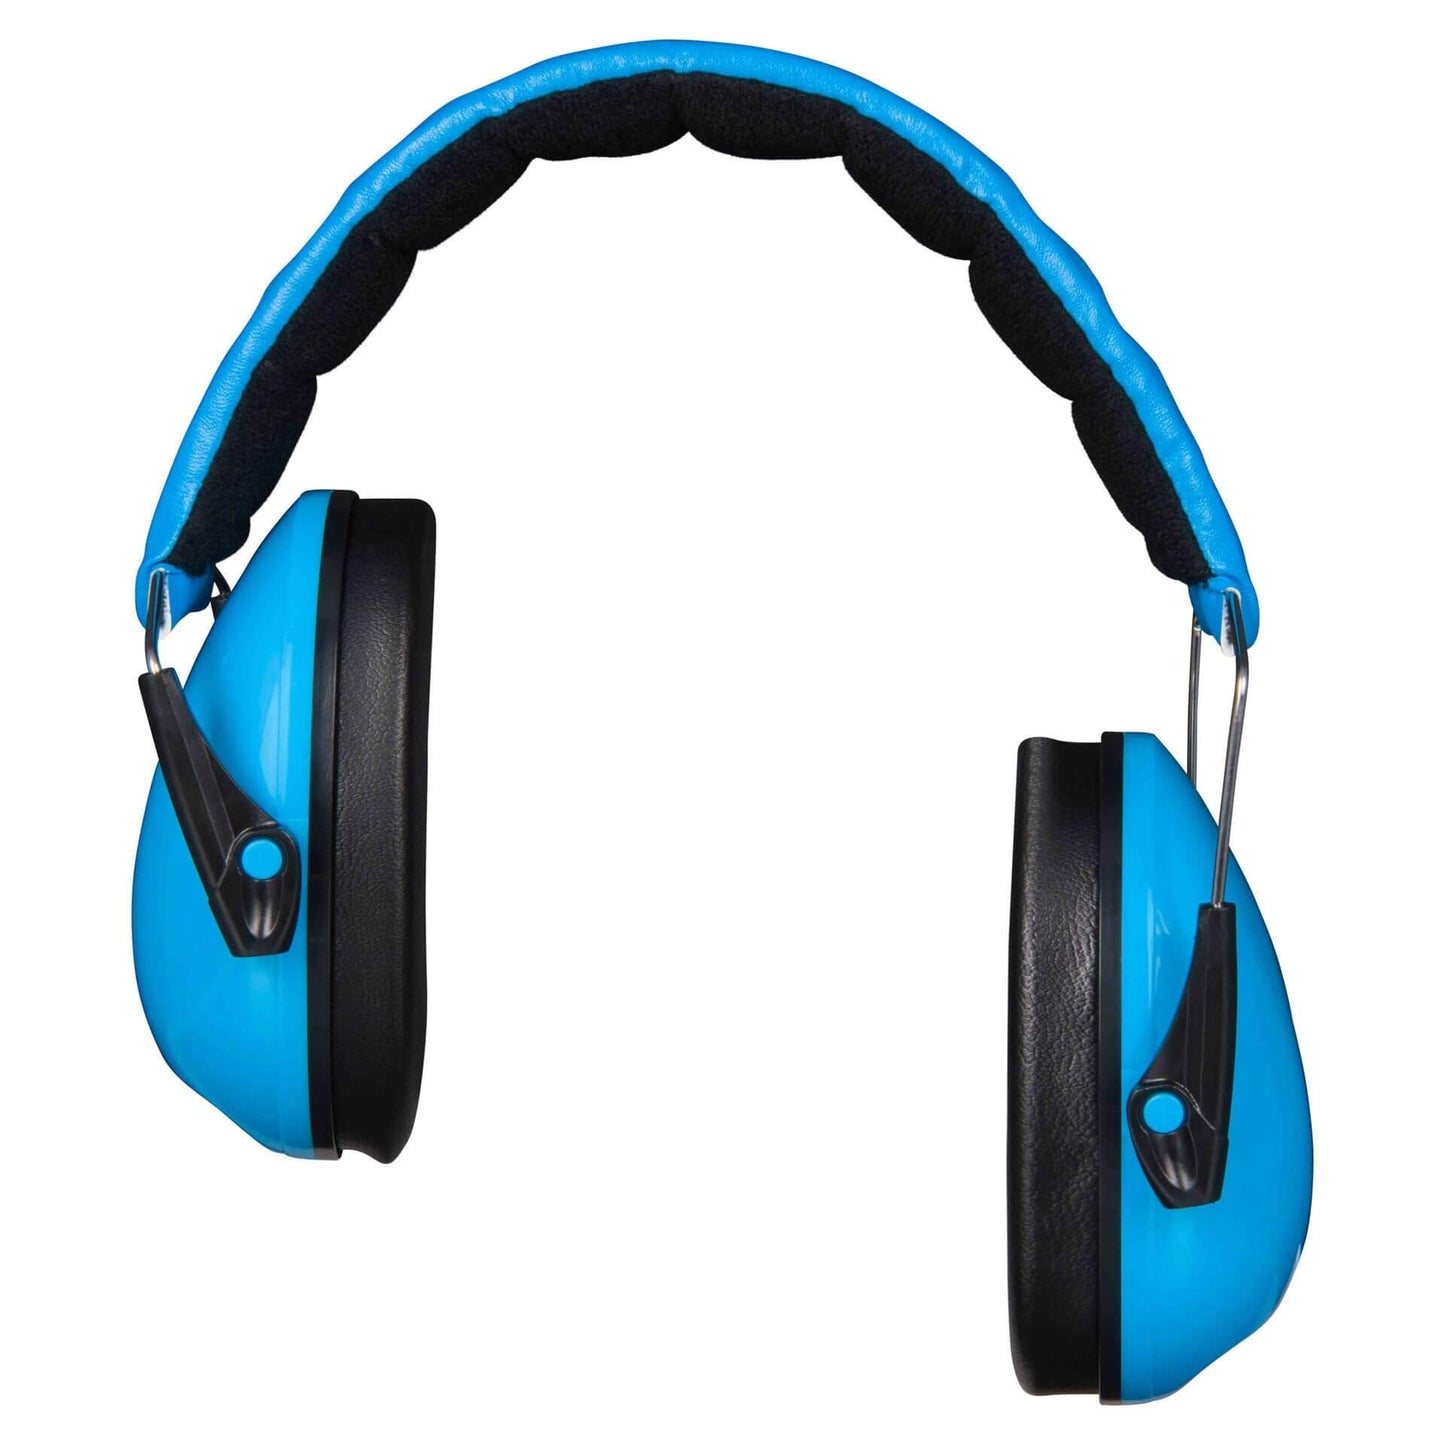 Dooky Junior Ear Protection (Blue)